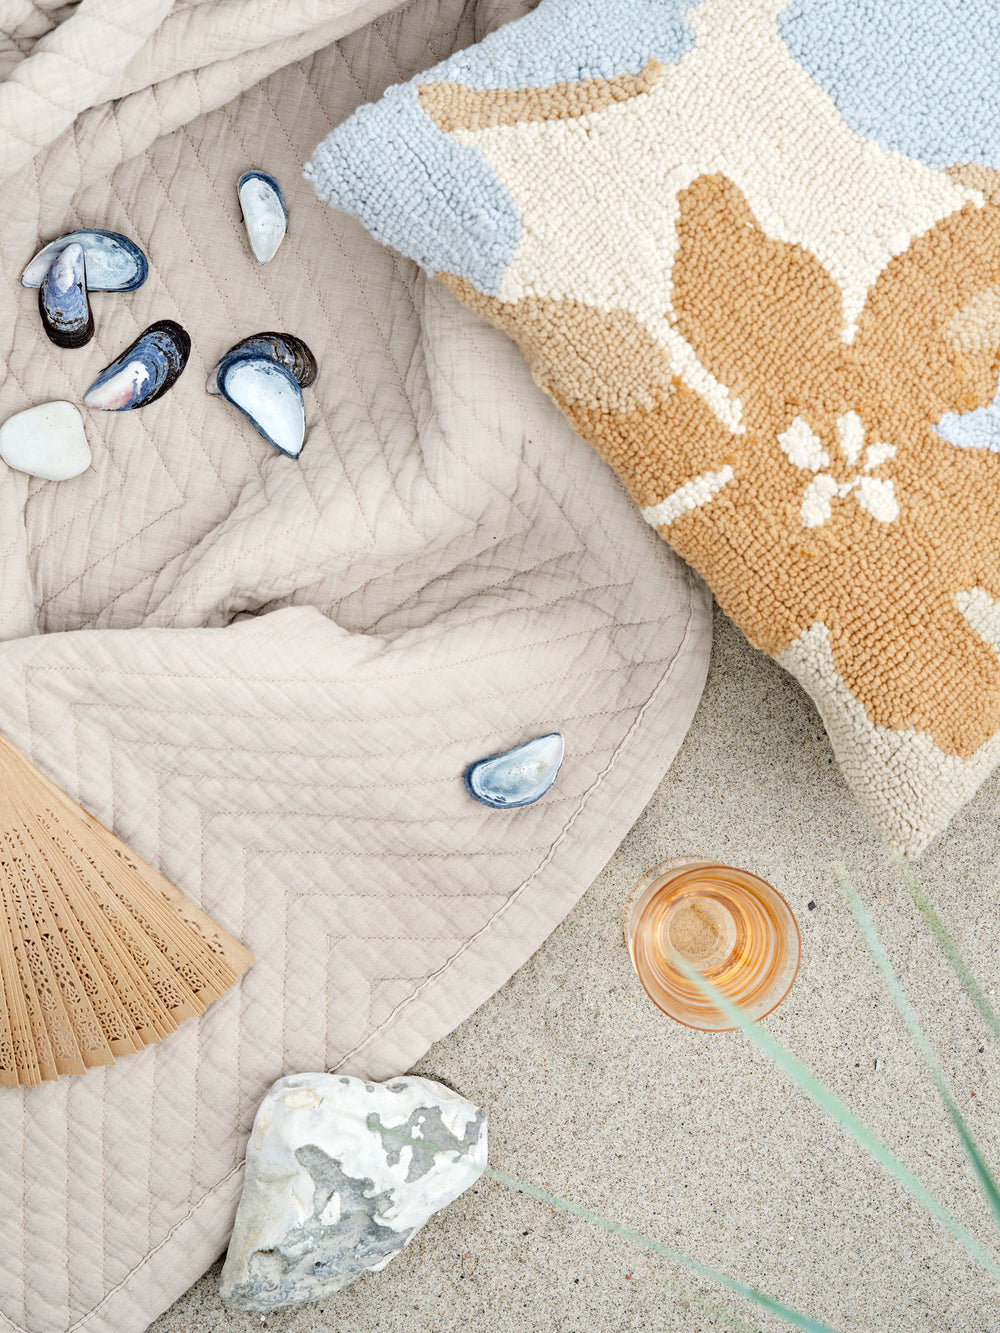 Beige tæppe ligger på sand med muslinger og forskelligfarvede pyntepuder.